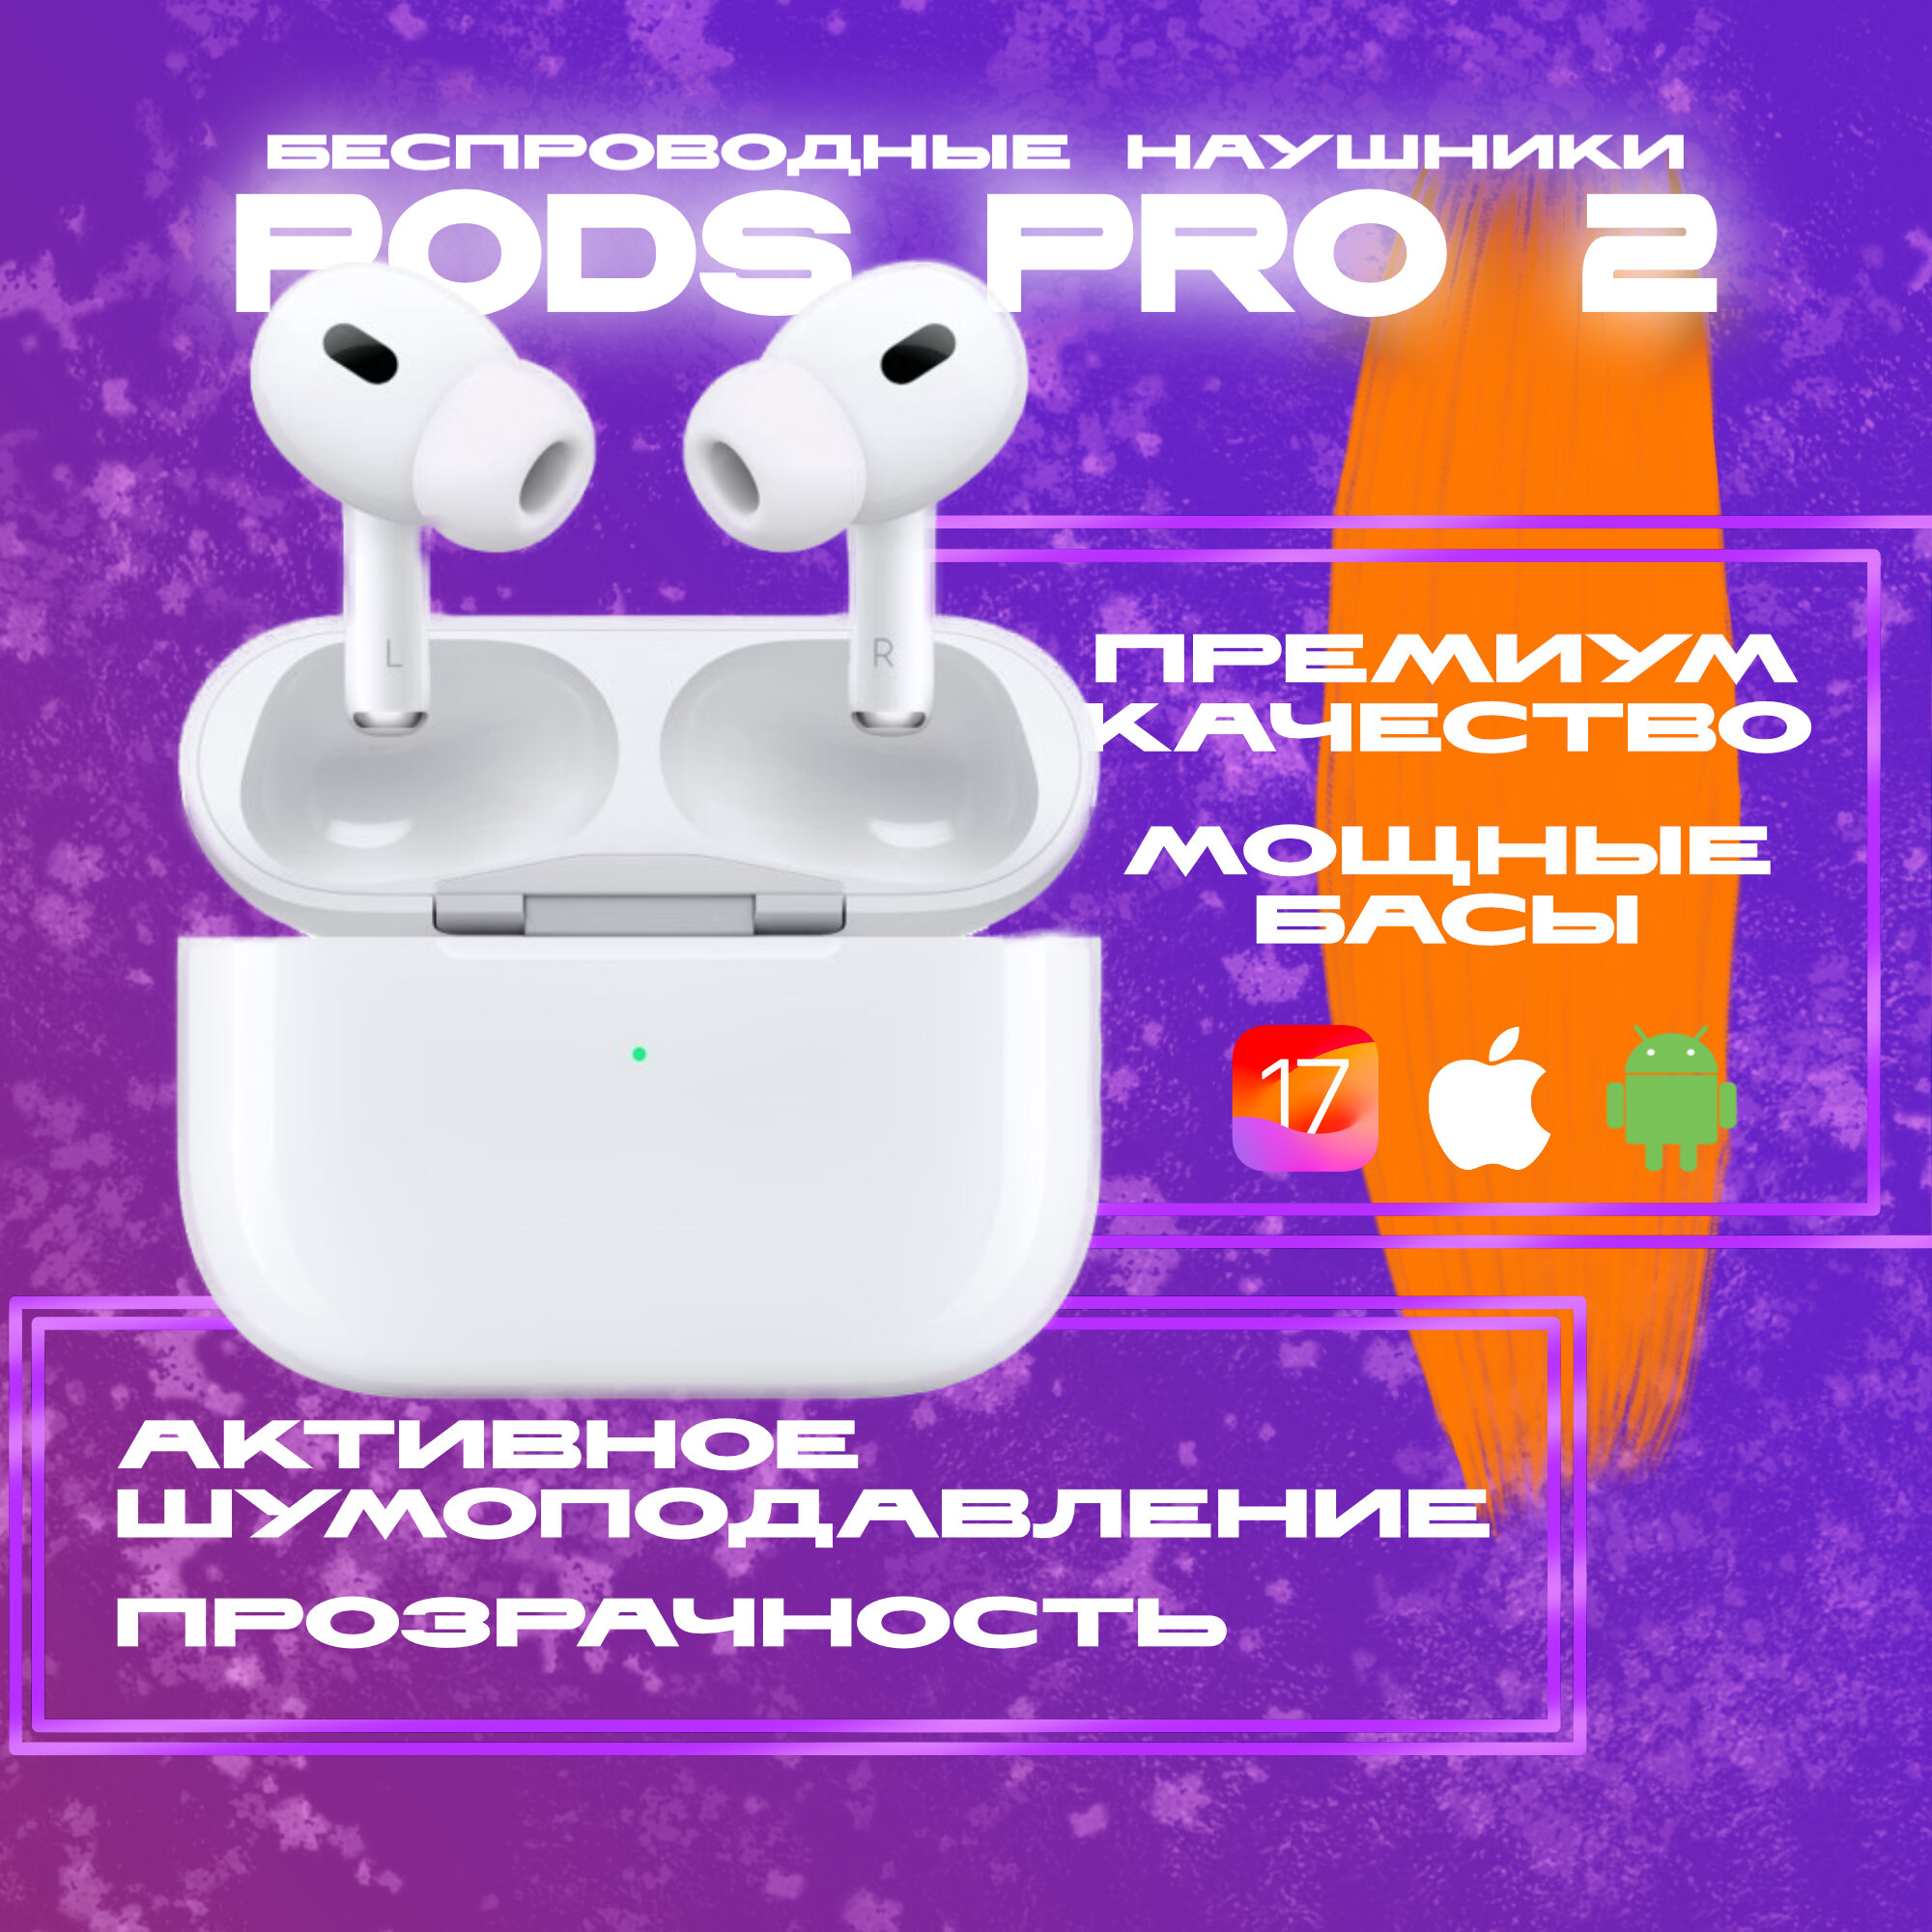 Наушники беспроводные Pods PRO 2 с активным шумоподавлением для iOS и Android PREMIUM